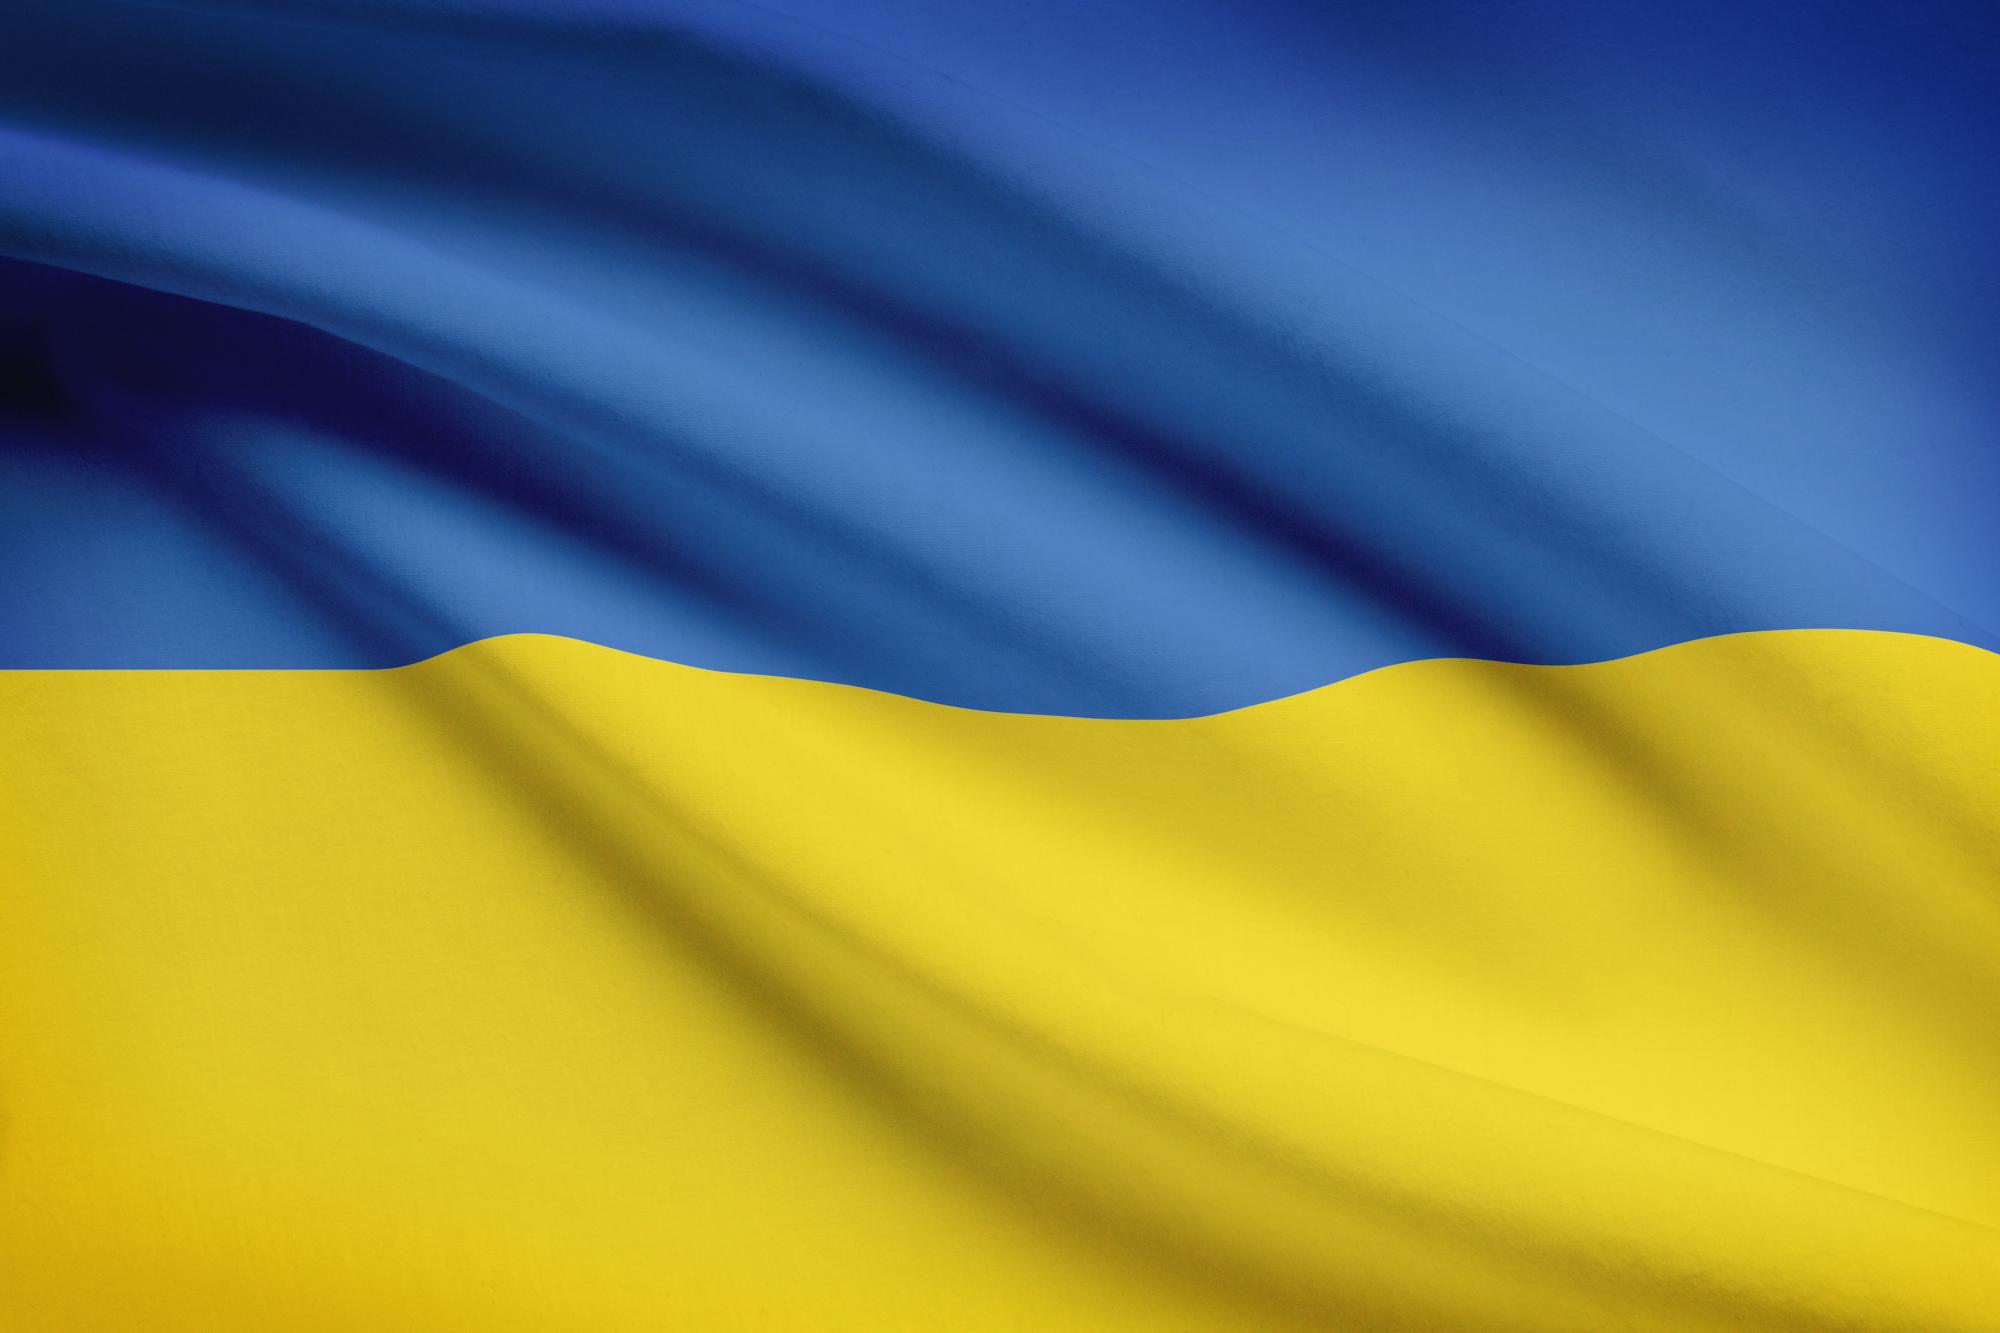 Европейский рынок откроют для украинских товаров и услуг с 15 мая